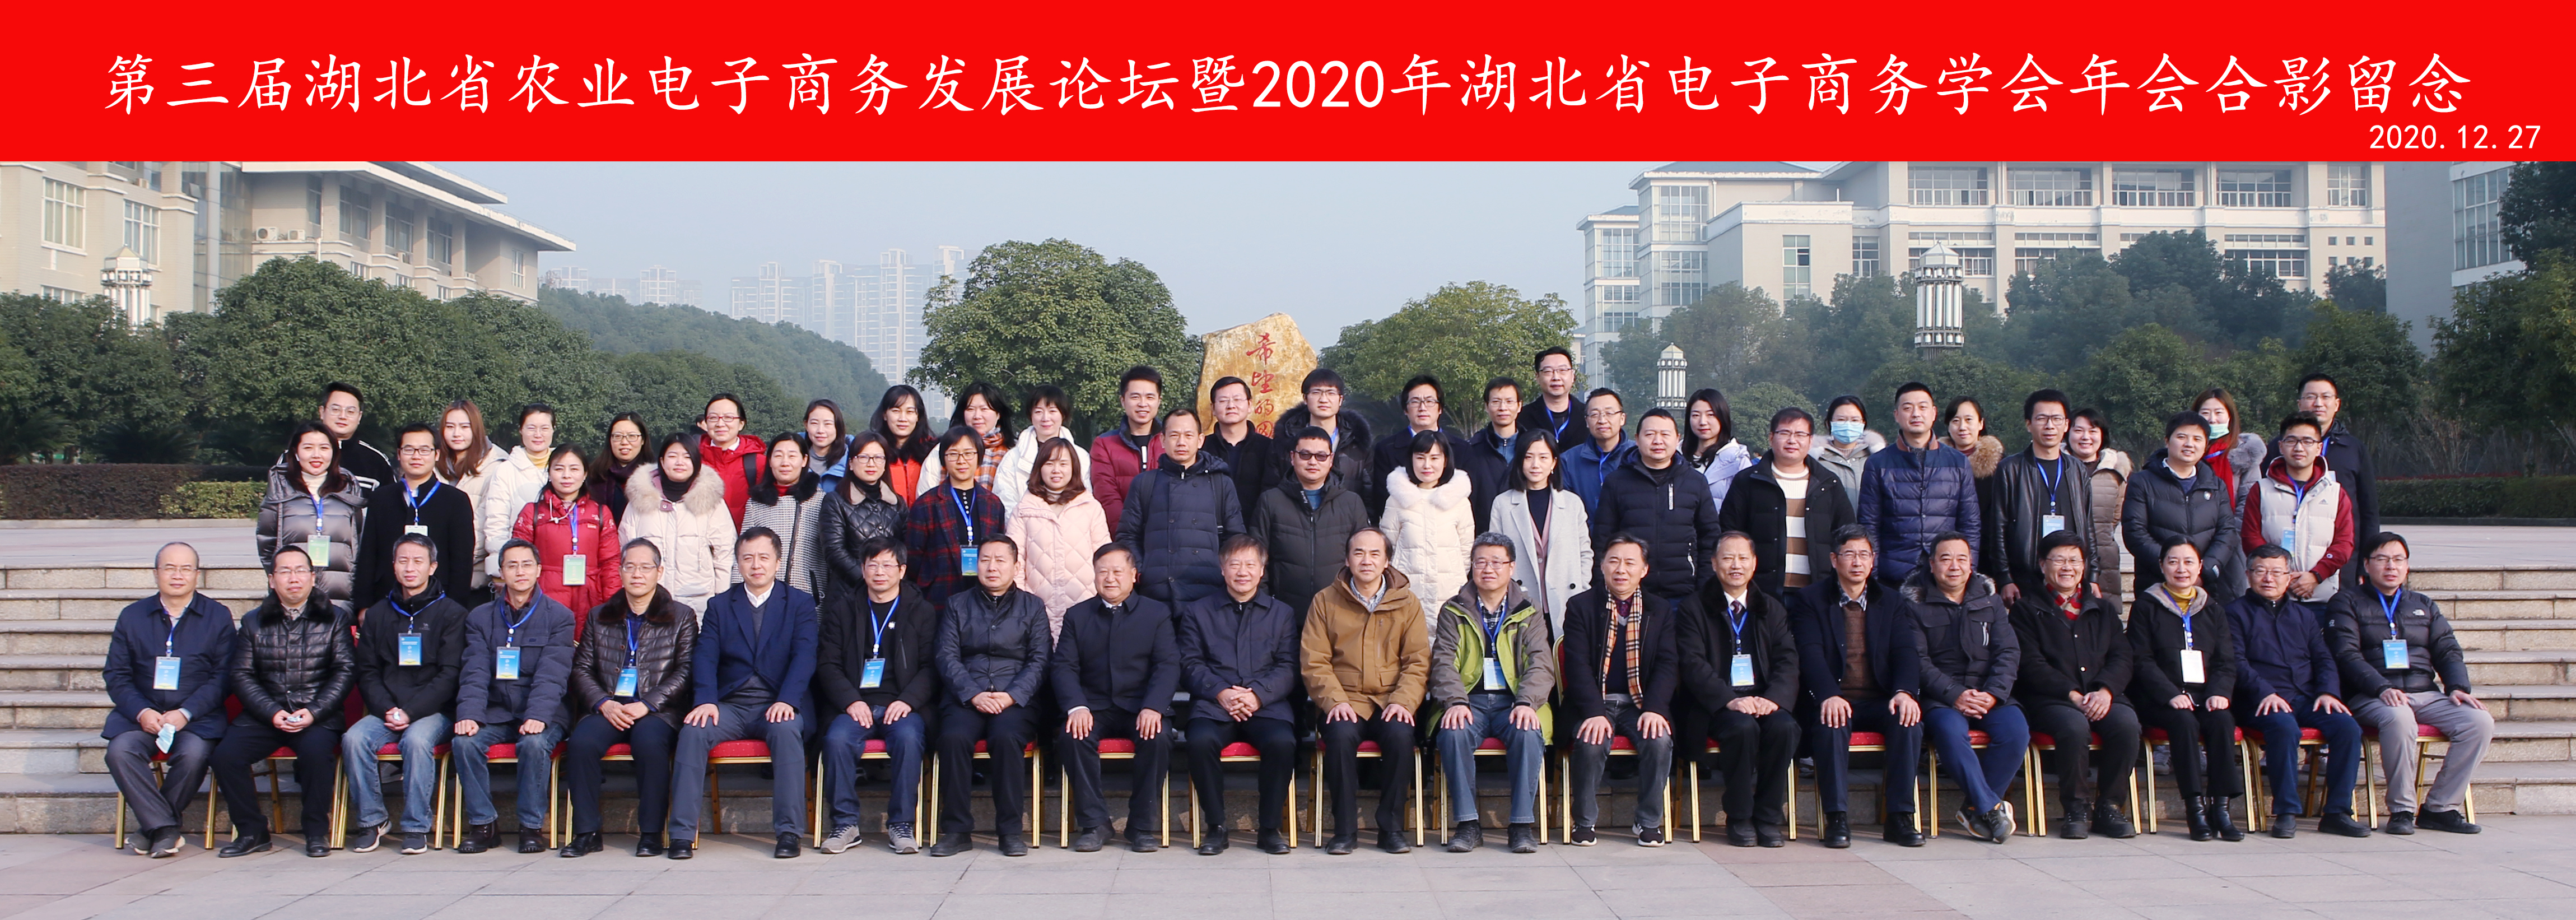 第三届湖北省农业电子商务发展论坛暨2020年湖北省电子商务学会年会圆满举行